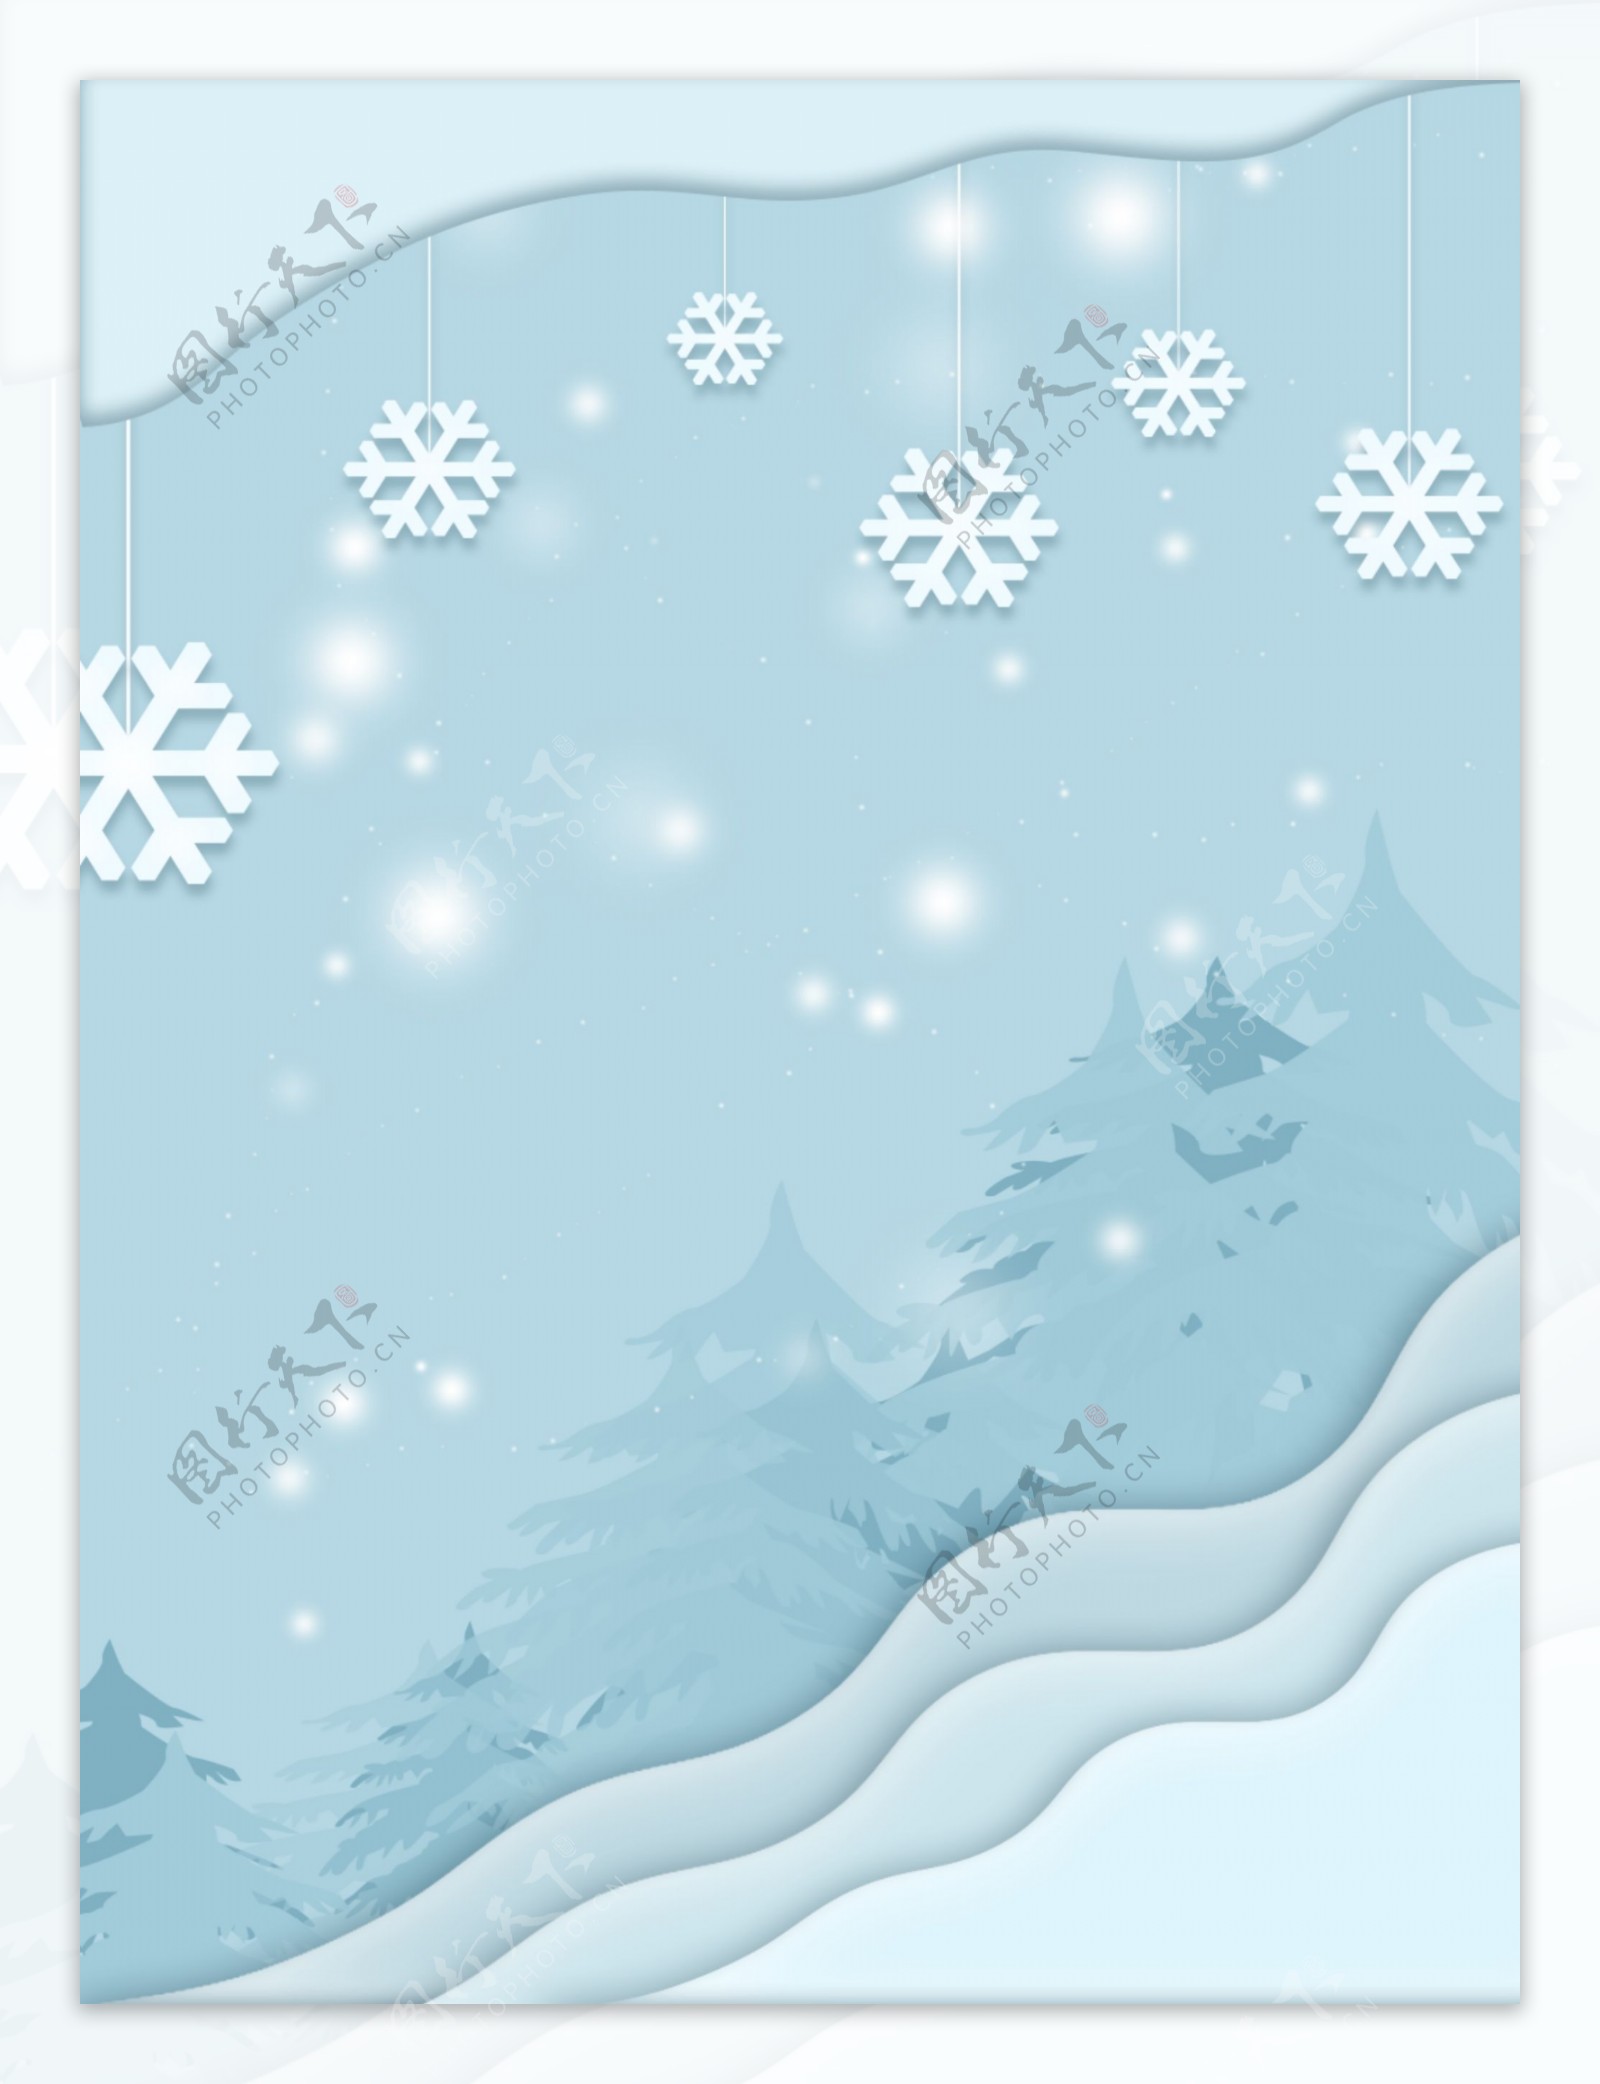 全原创创意剪纸风冬季雪景蓝色系背景